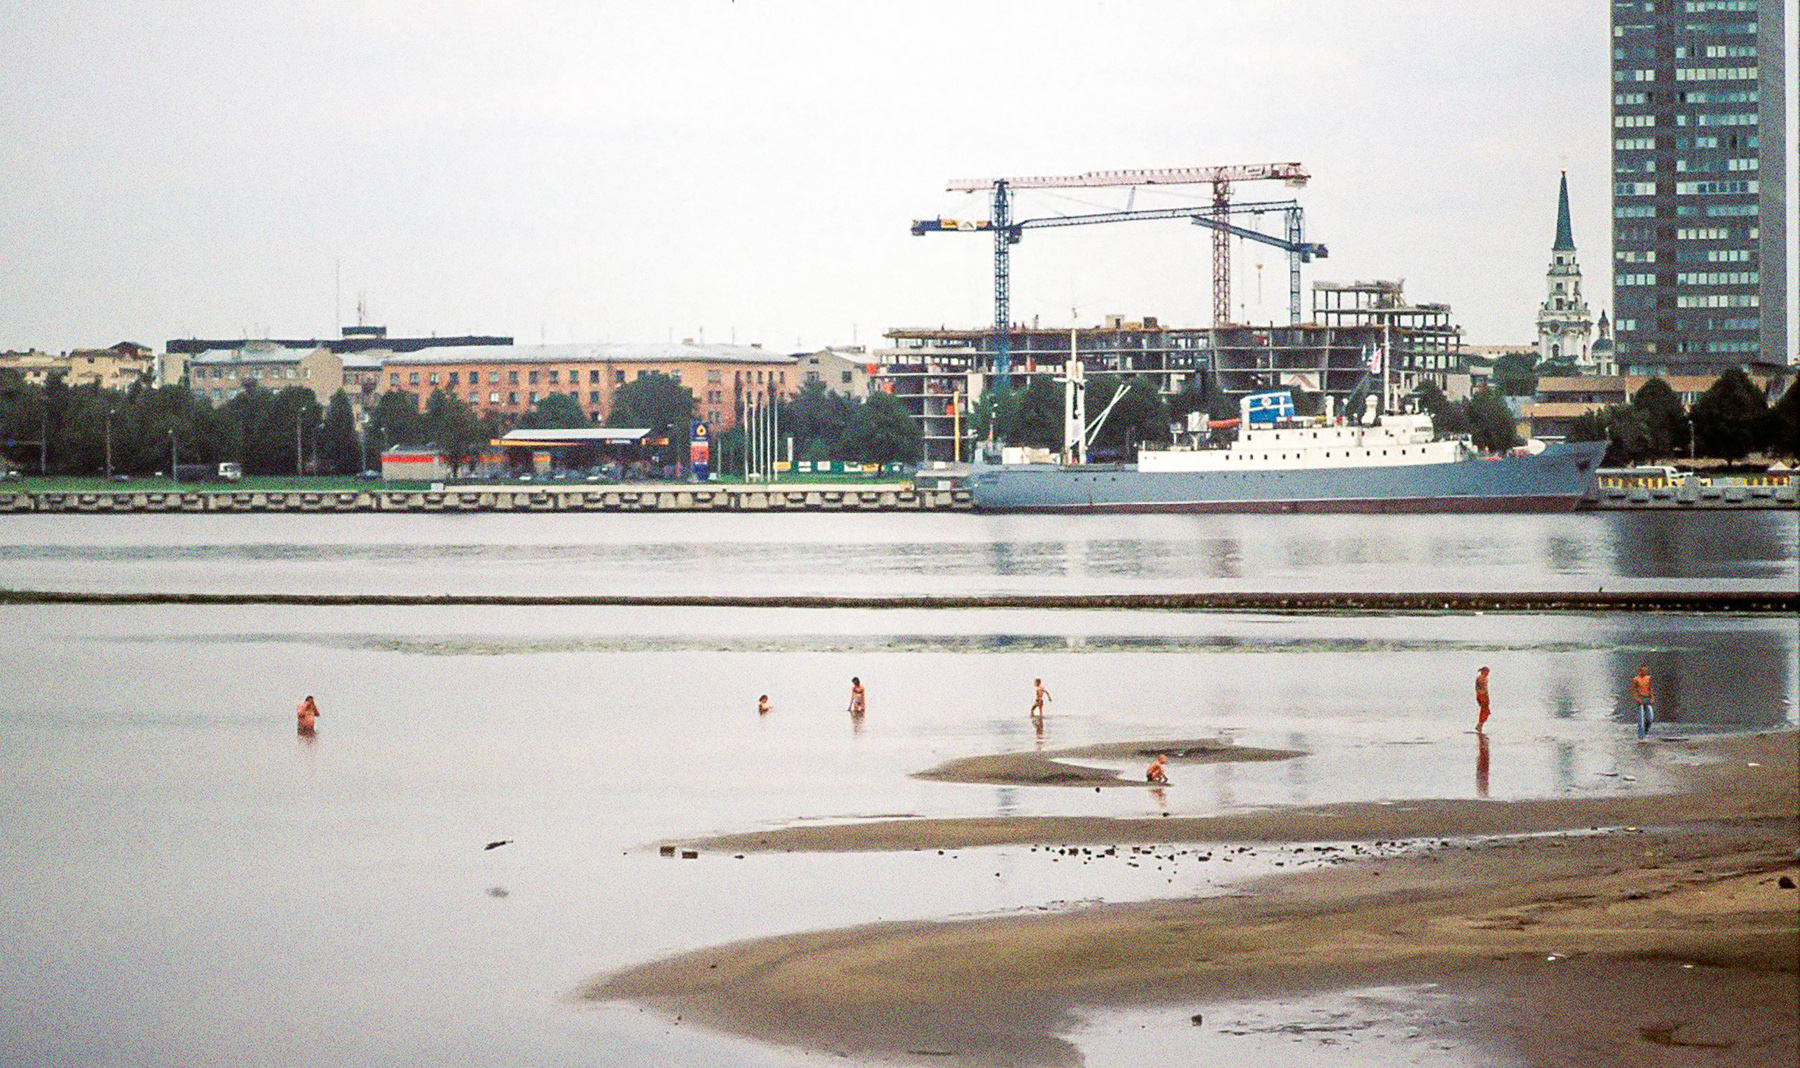 Die Stubnitz in Riga 2005. Im Vordergrund ein Stadtstrand mit badenden Menschen. Im Hintergrund Gebäude und Kräne.